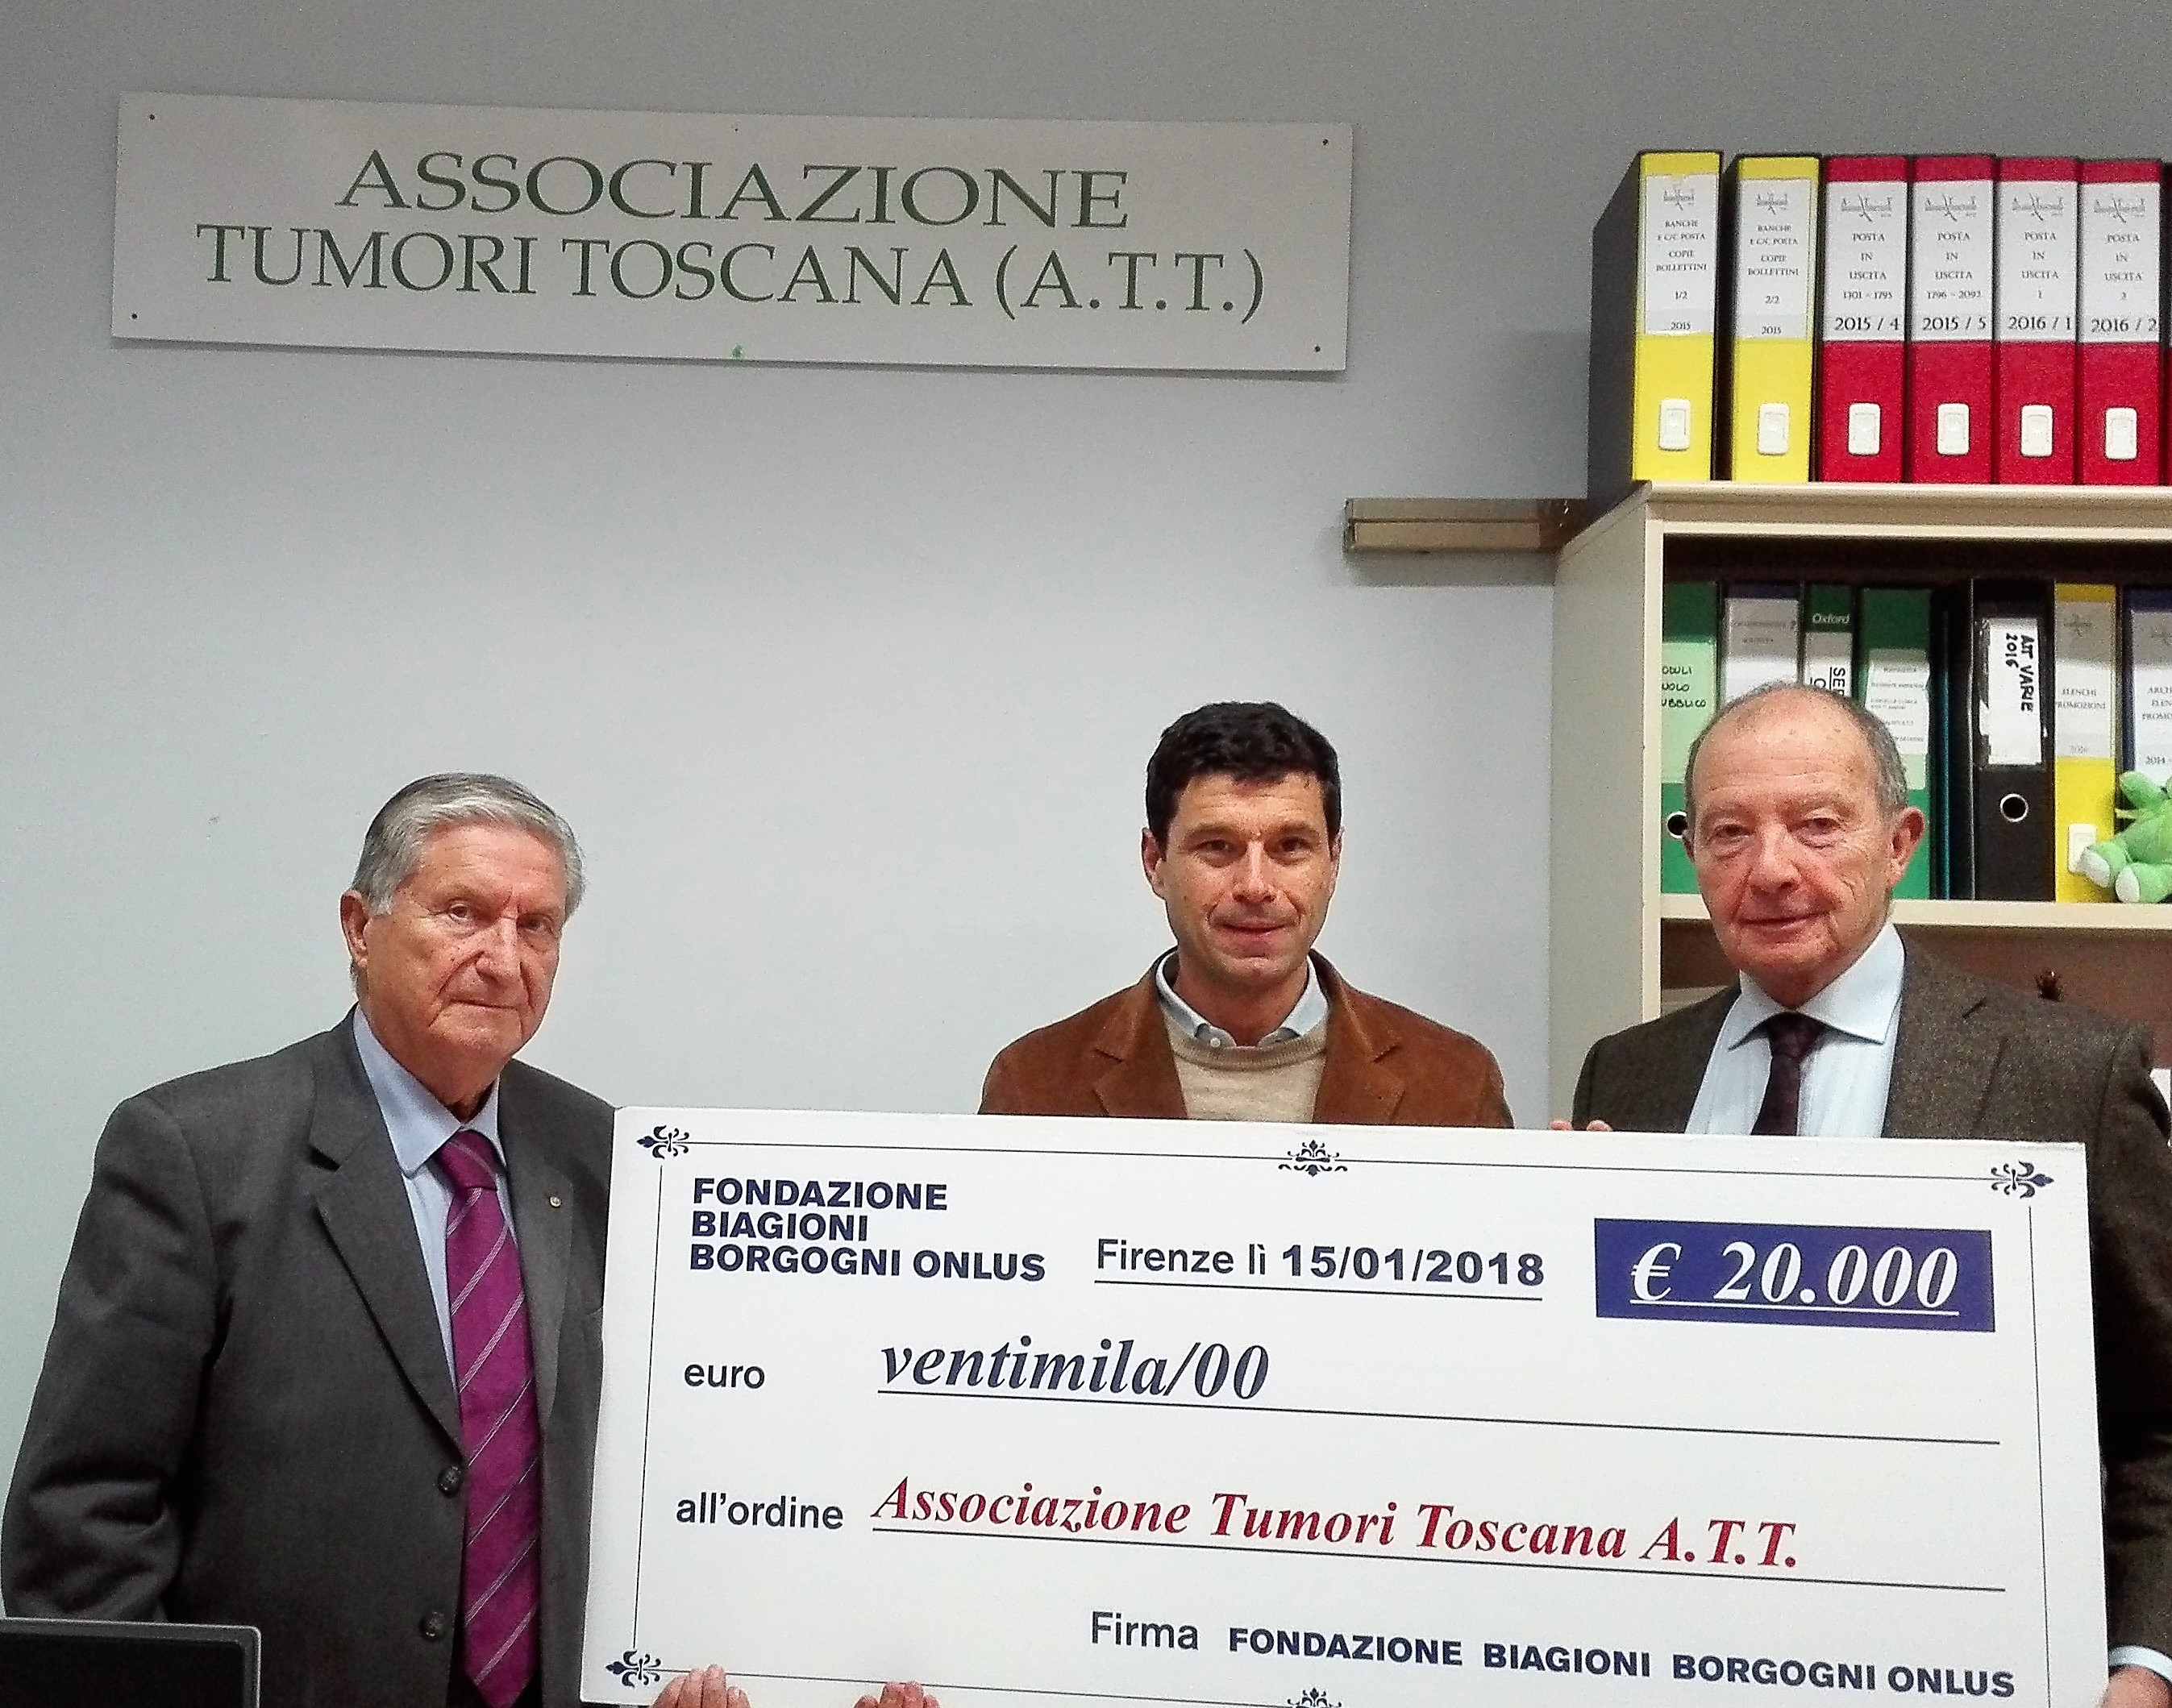 La Fondazione Biagioni Borgogni Onlus dona 20 mila Euro all’A.T.T